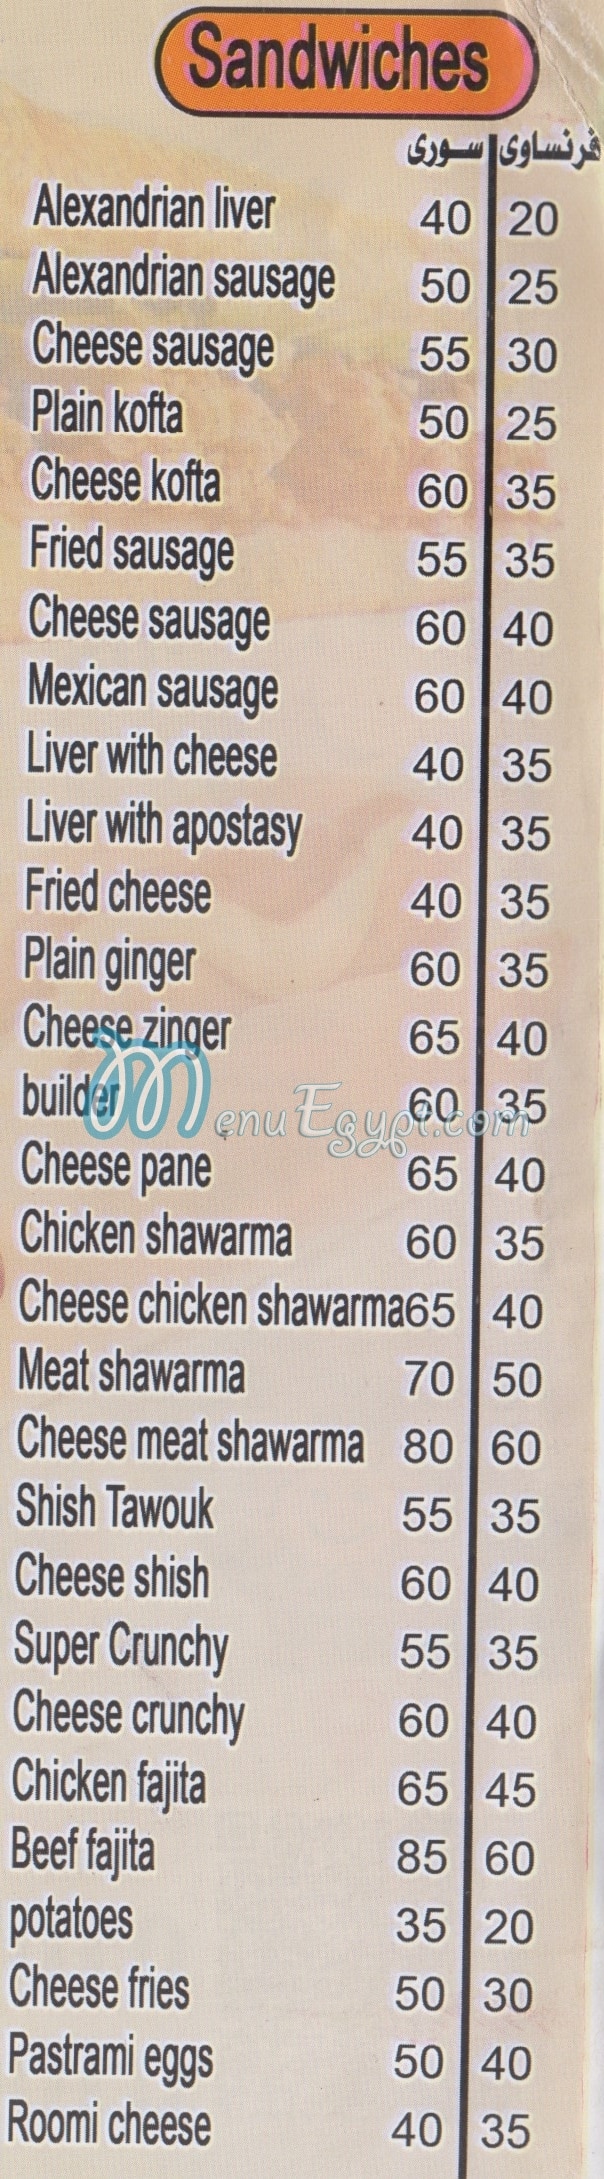 Shams Snack menu Egypt 2